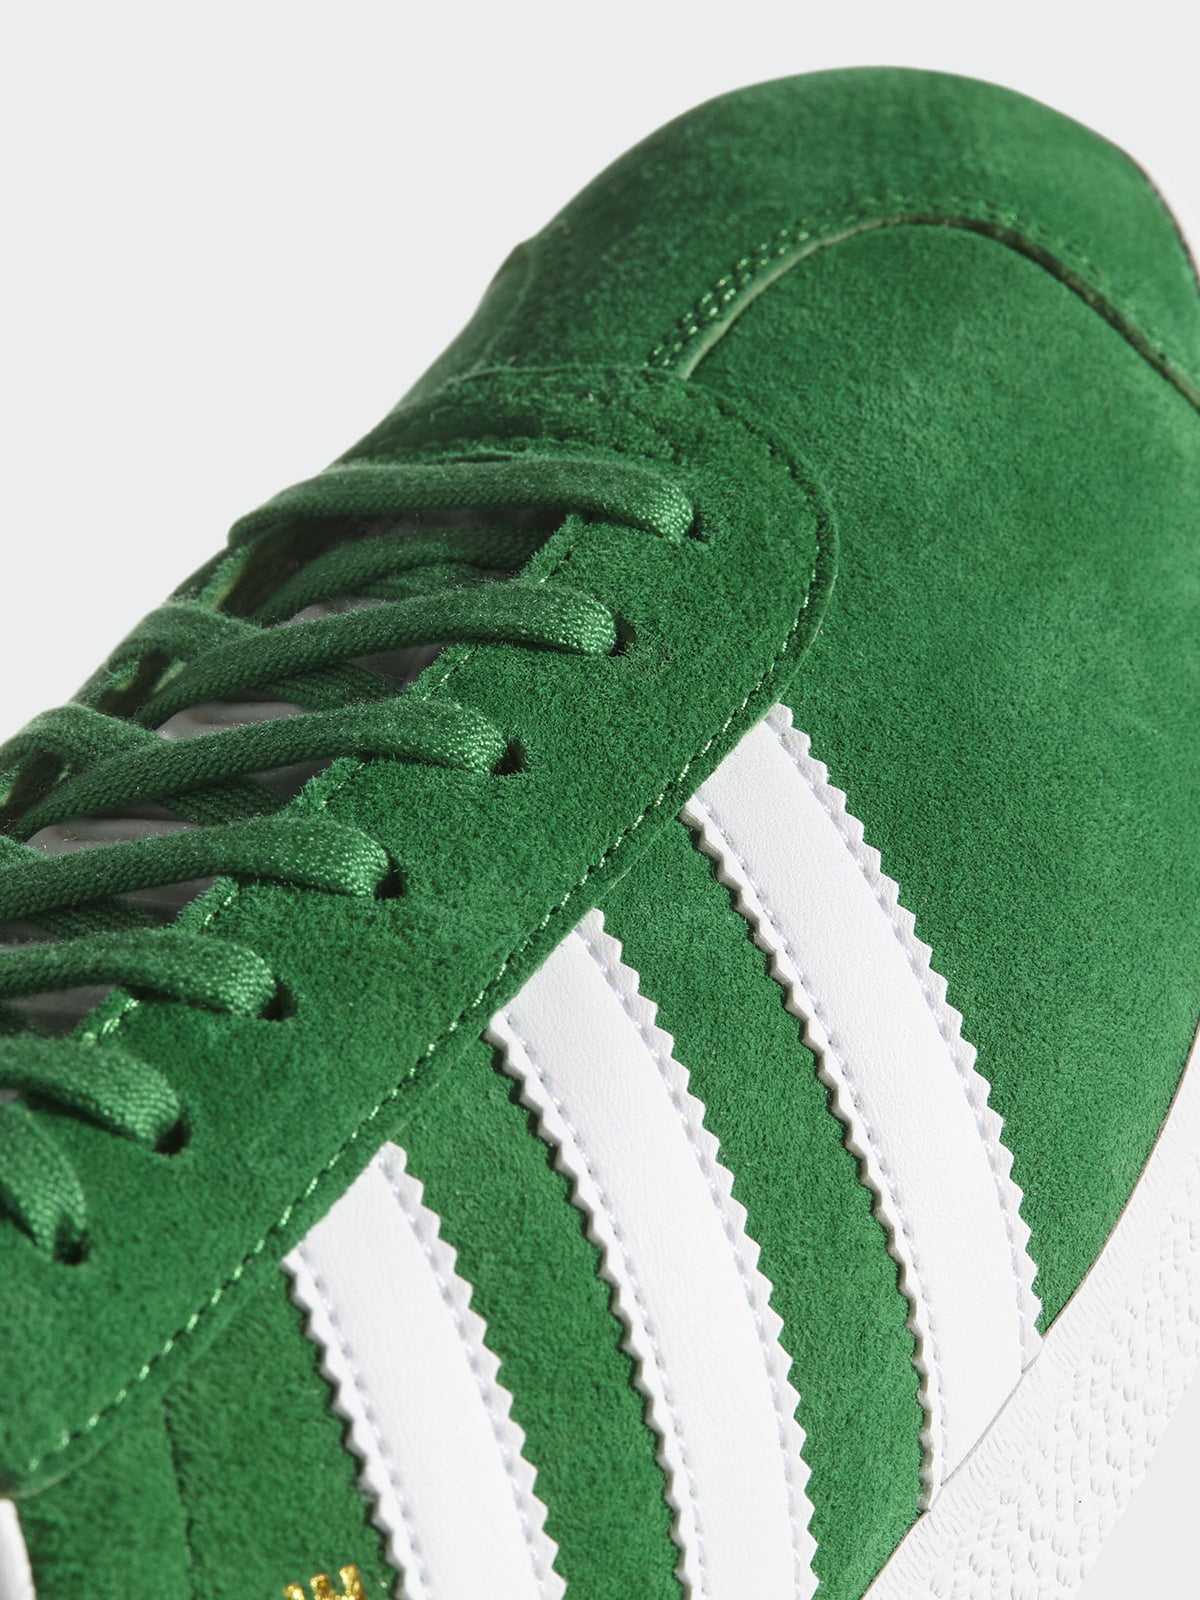 Зеленые кроссовки adidas